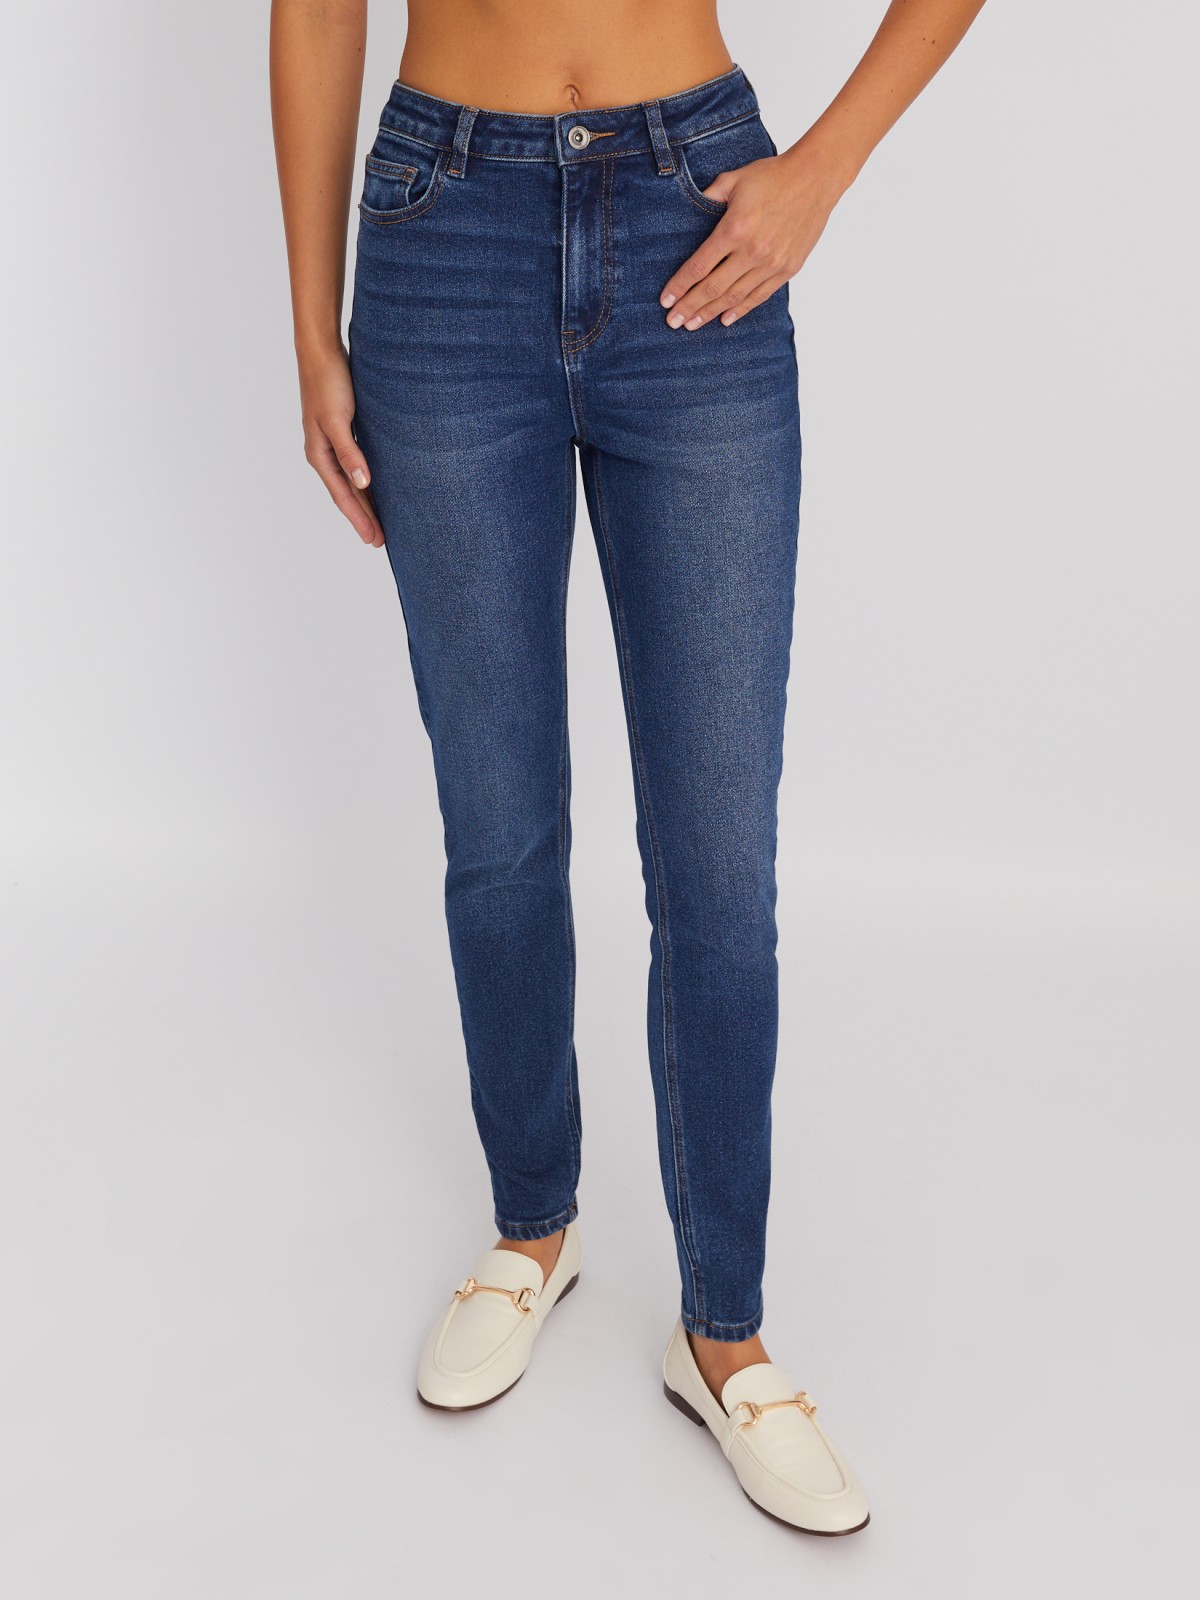 Утеплённые джинсы силуэта Skinny с высокой посадкой